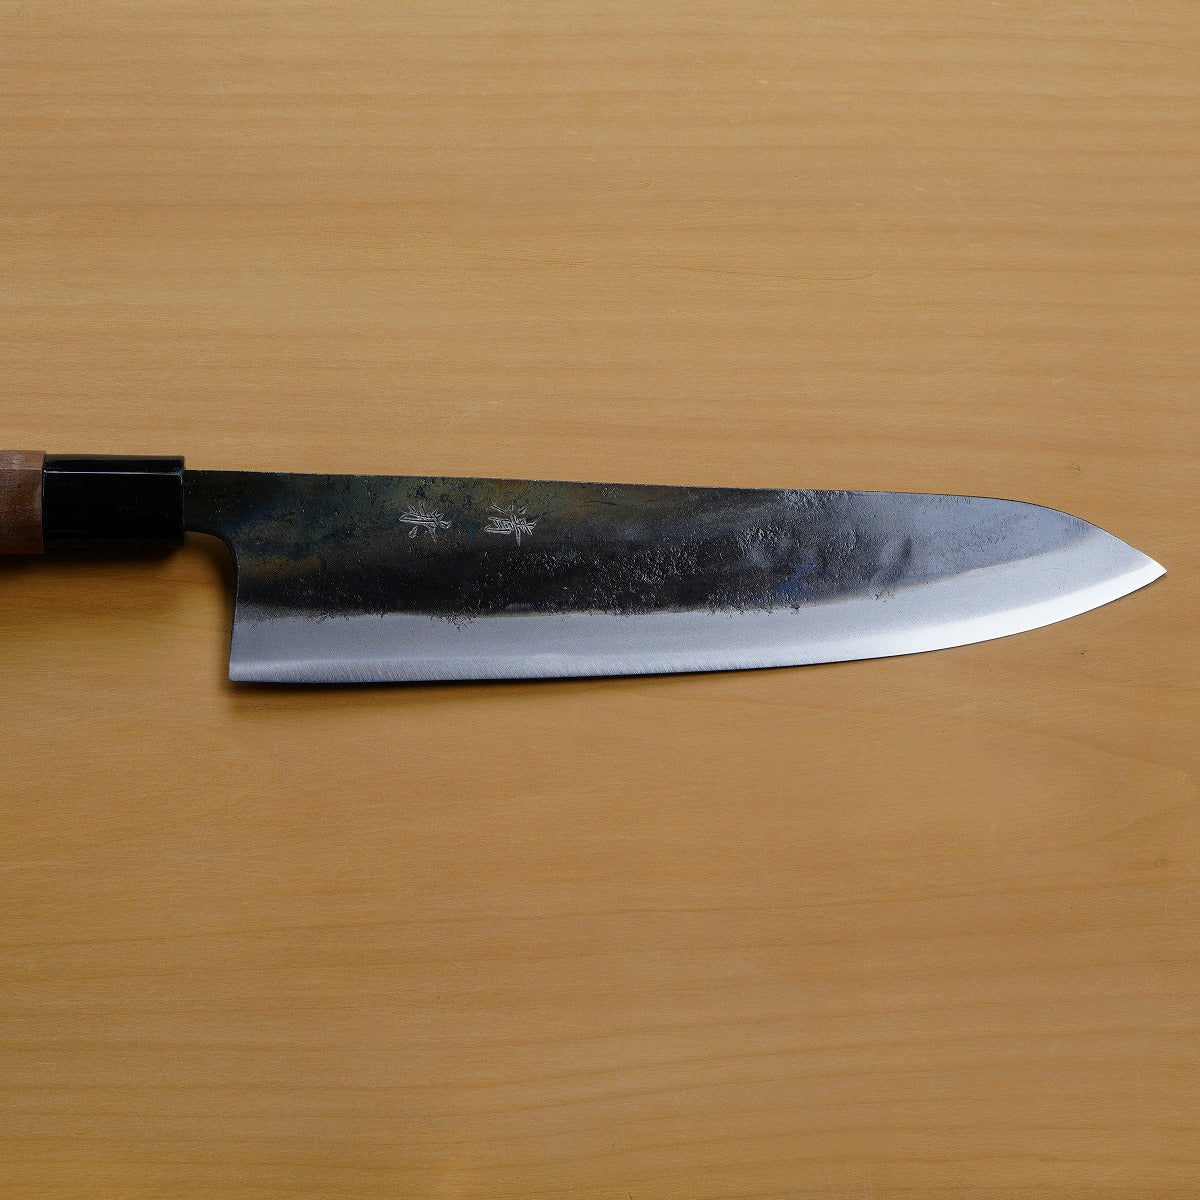 KIYOKANE Gyuto Kurouchi (Chef's Knife) Aogami Super Steel with